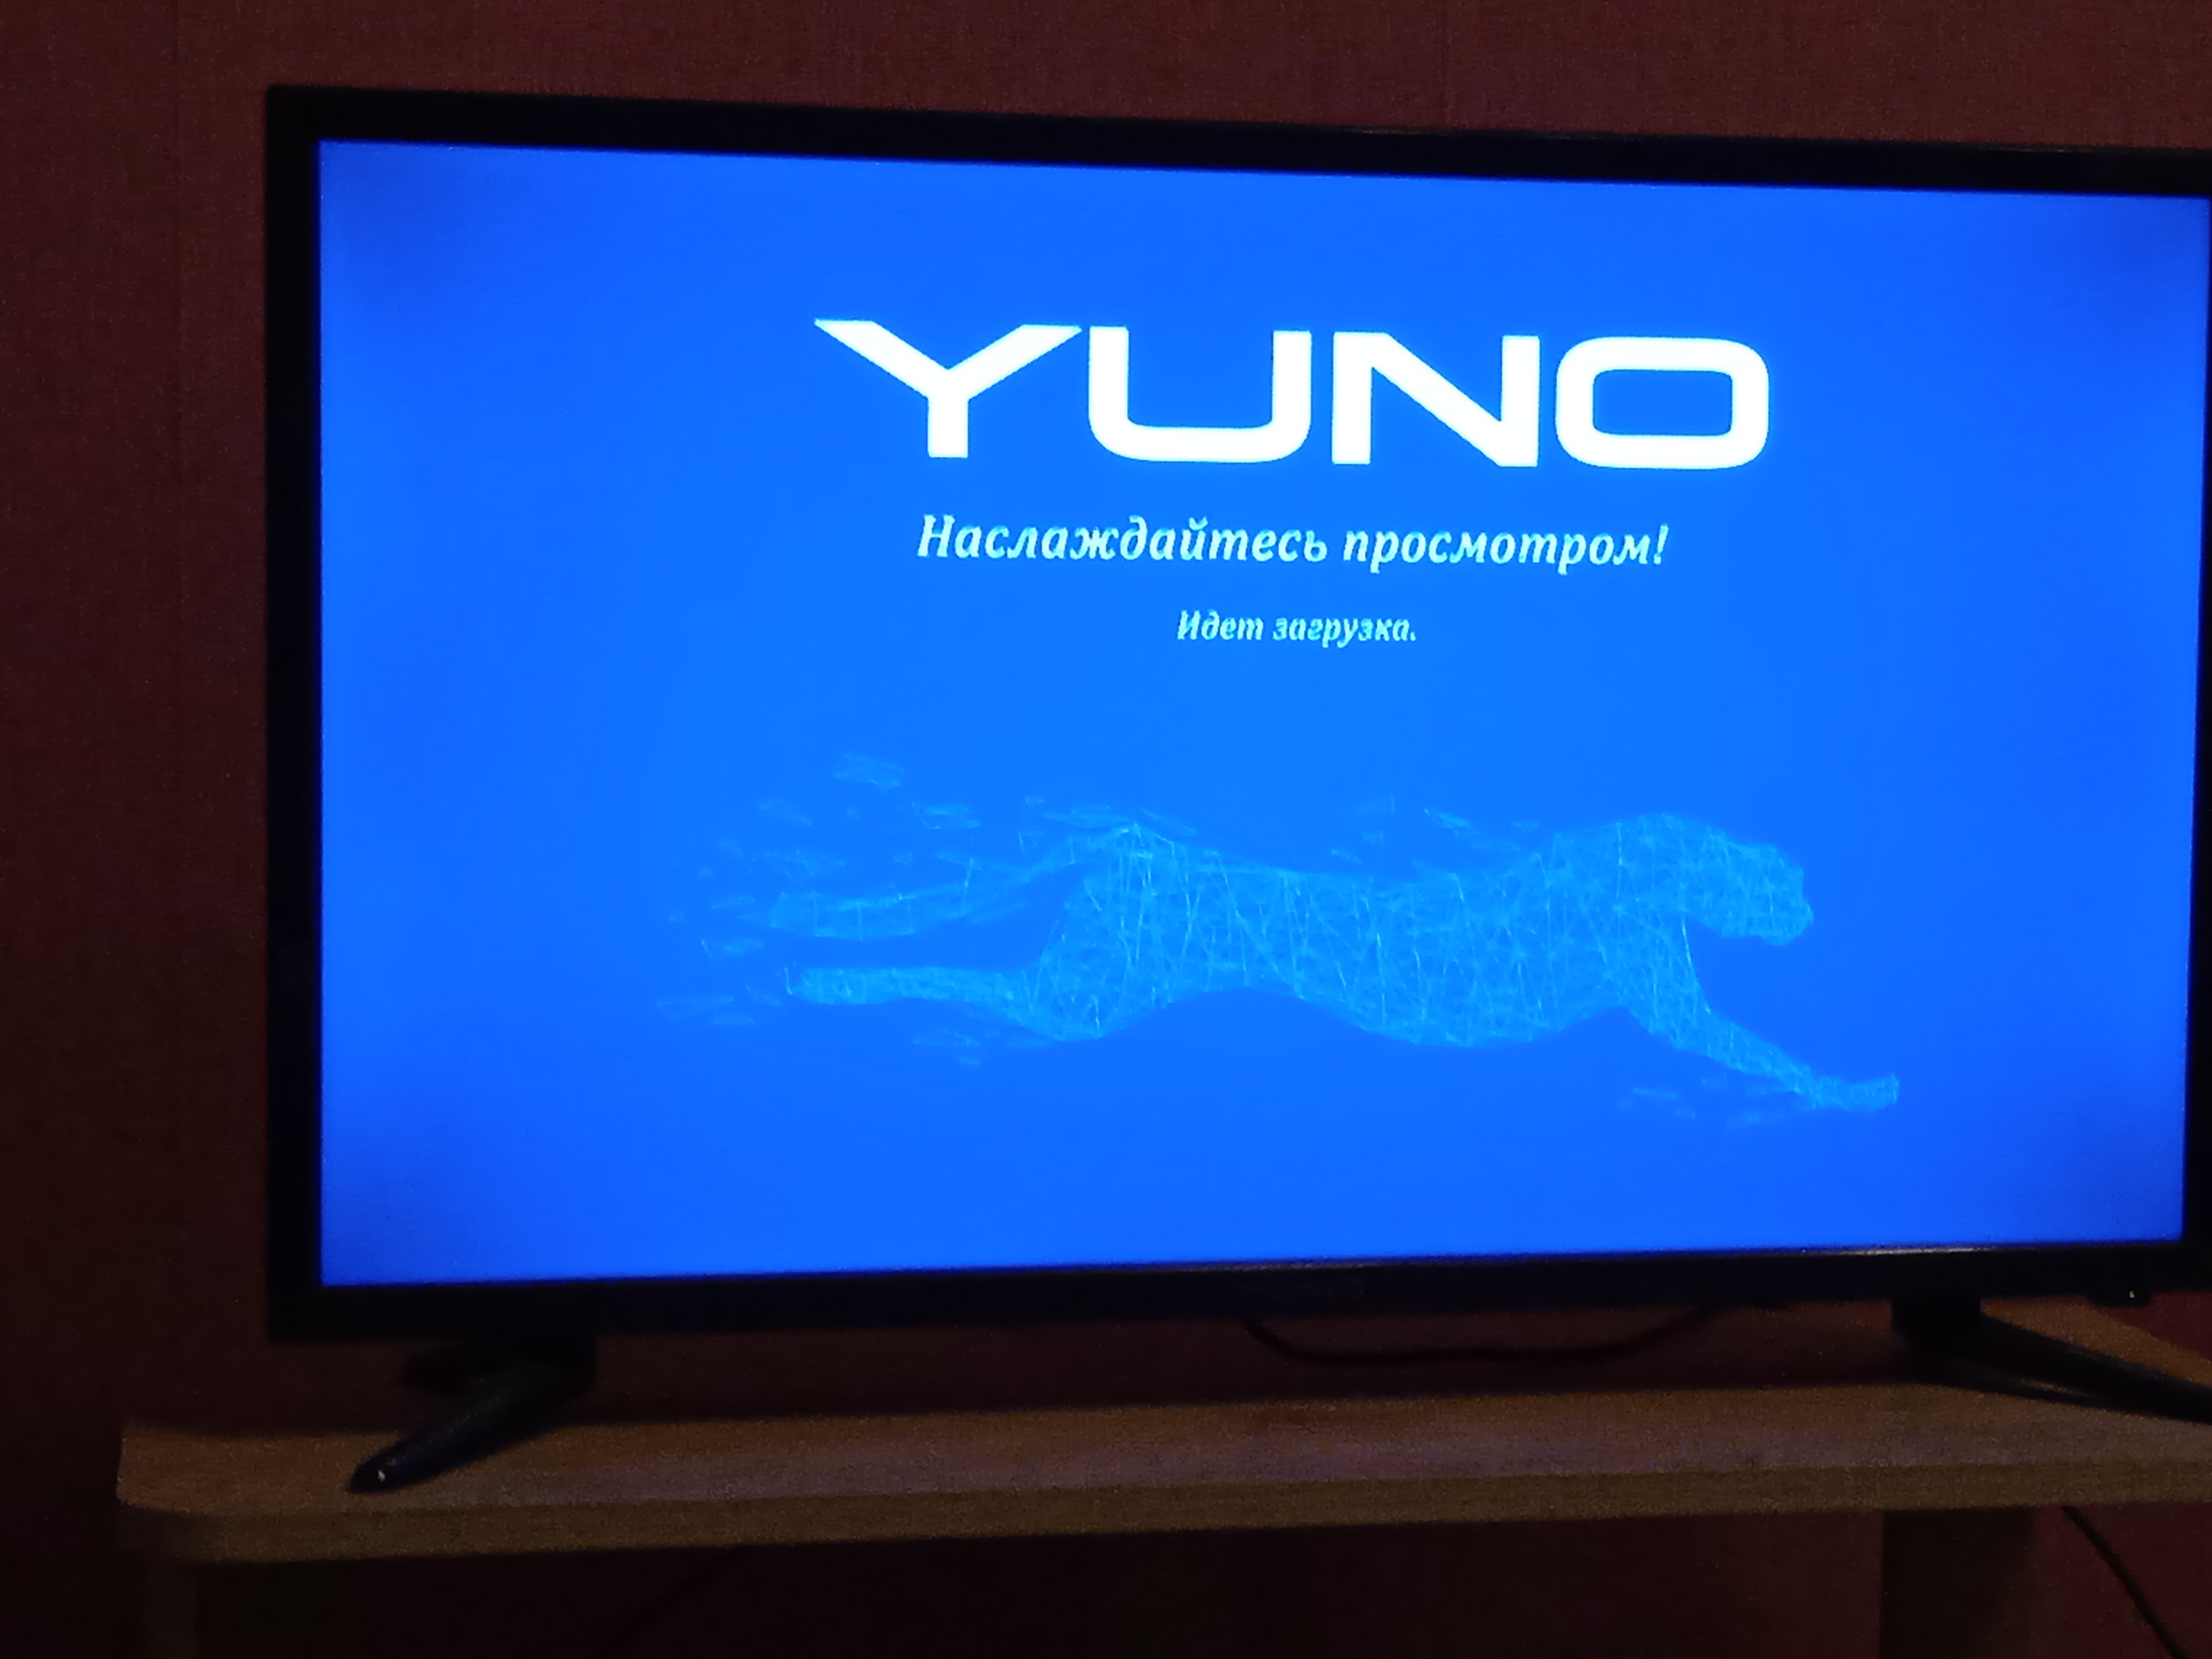 Телевизор yuno купить. Телевизор Yuno. Телевизор виснет. Заставка на телевизор. Заставки BBK на телевизоре.